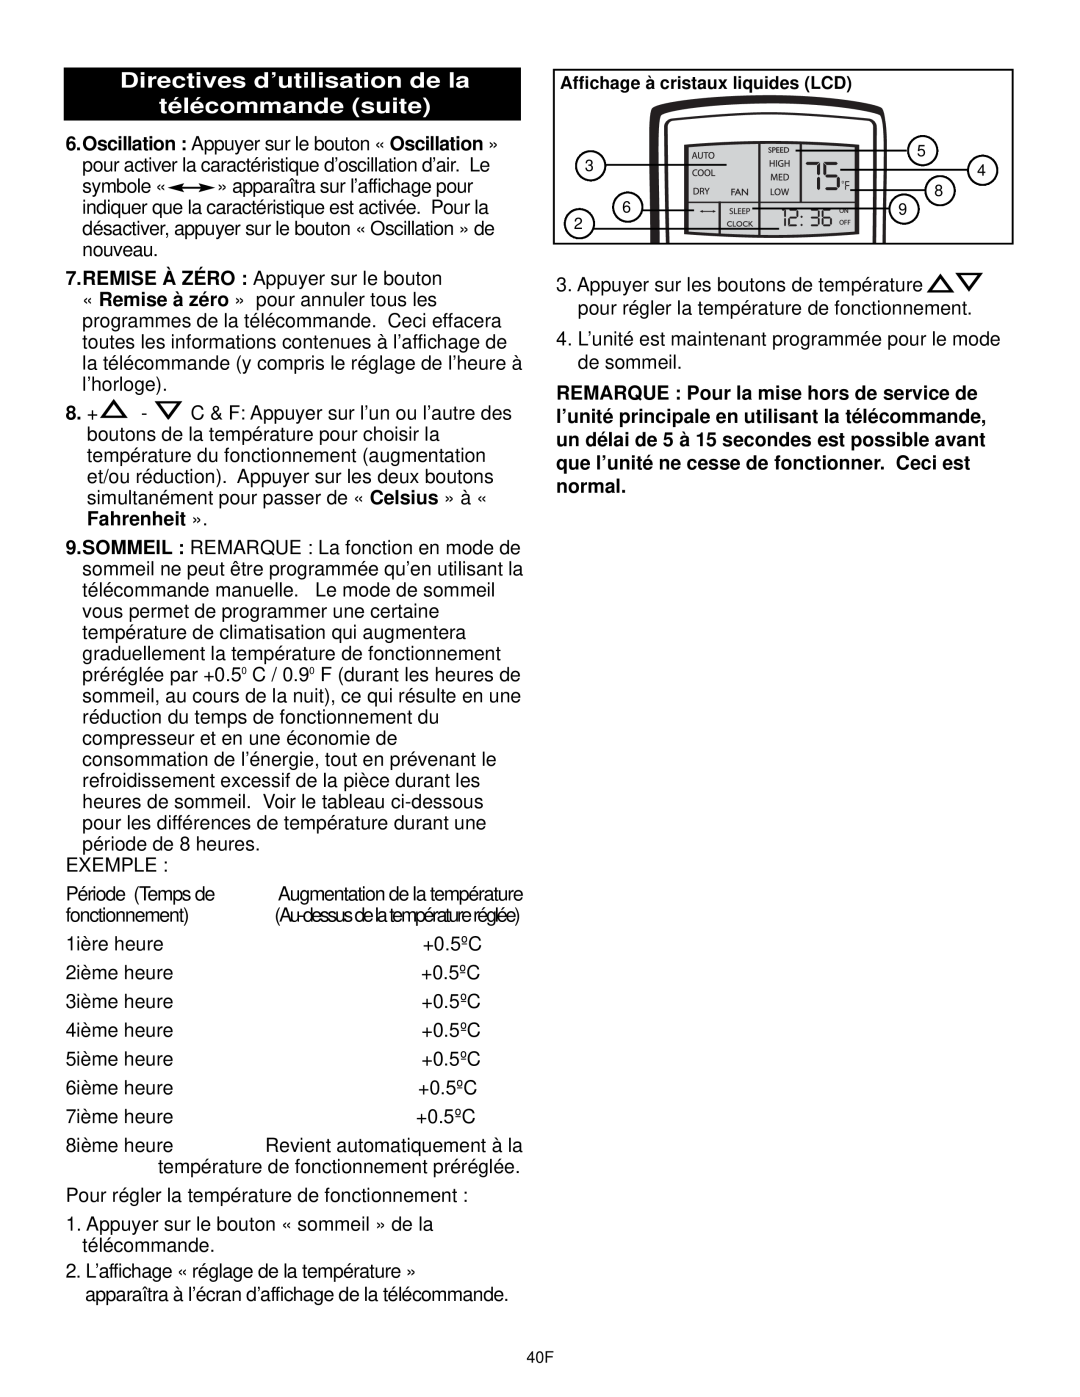 Danby DPAC10030 manual Directives d’utilisation de la télécommande suite, Affichage à cristaux liquides LCD 